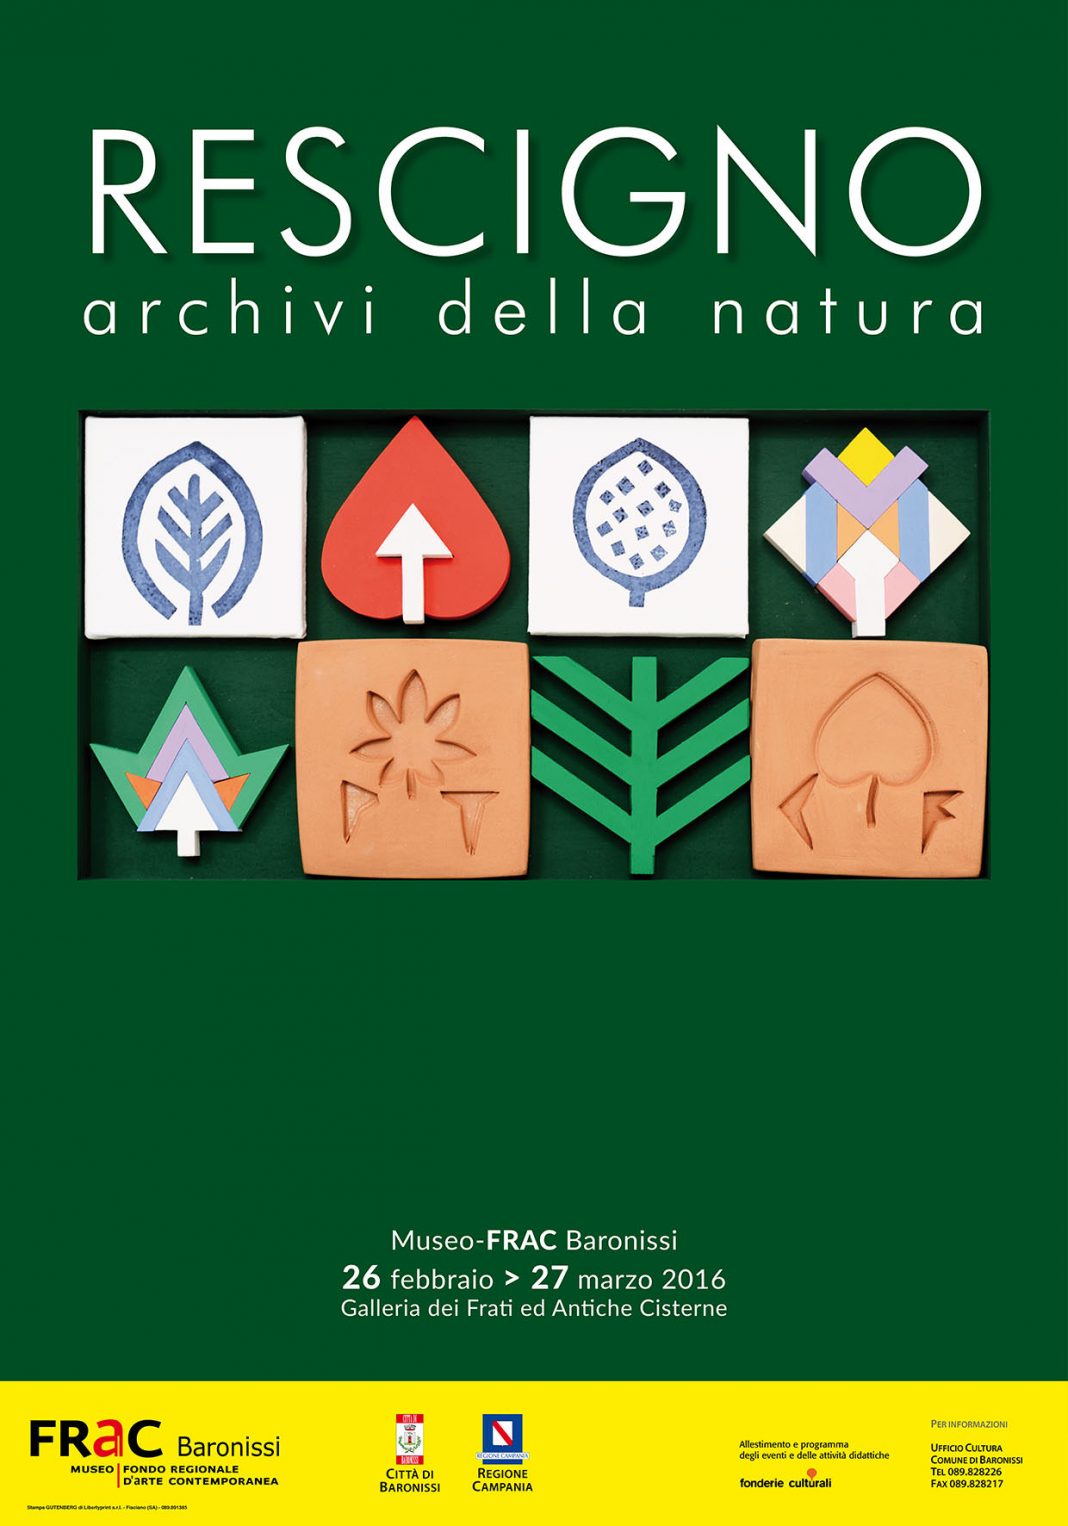 Giuseppe Rescigno – Archivi della naturahttps://www.exibart.com/repository/media/eventi/2016/02/giuseppe-rescigno-8211-archivi-della-natura-1068x1526.jpg